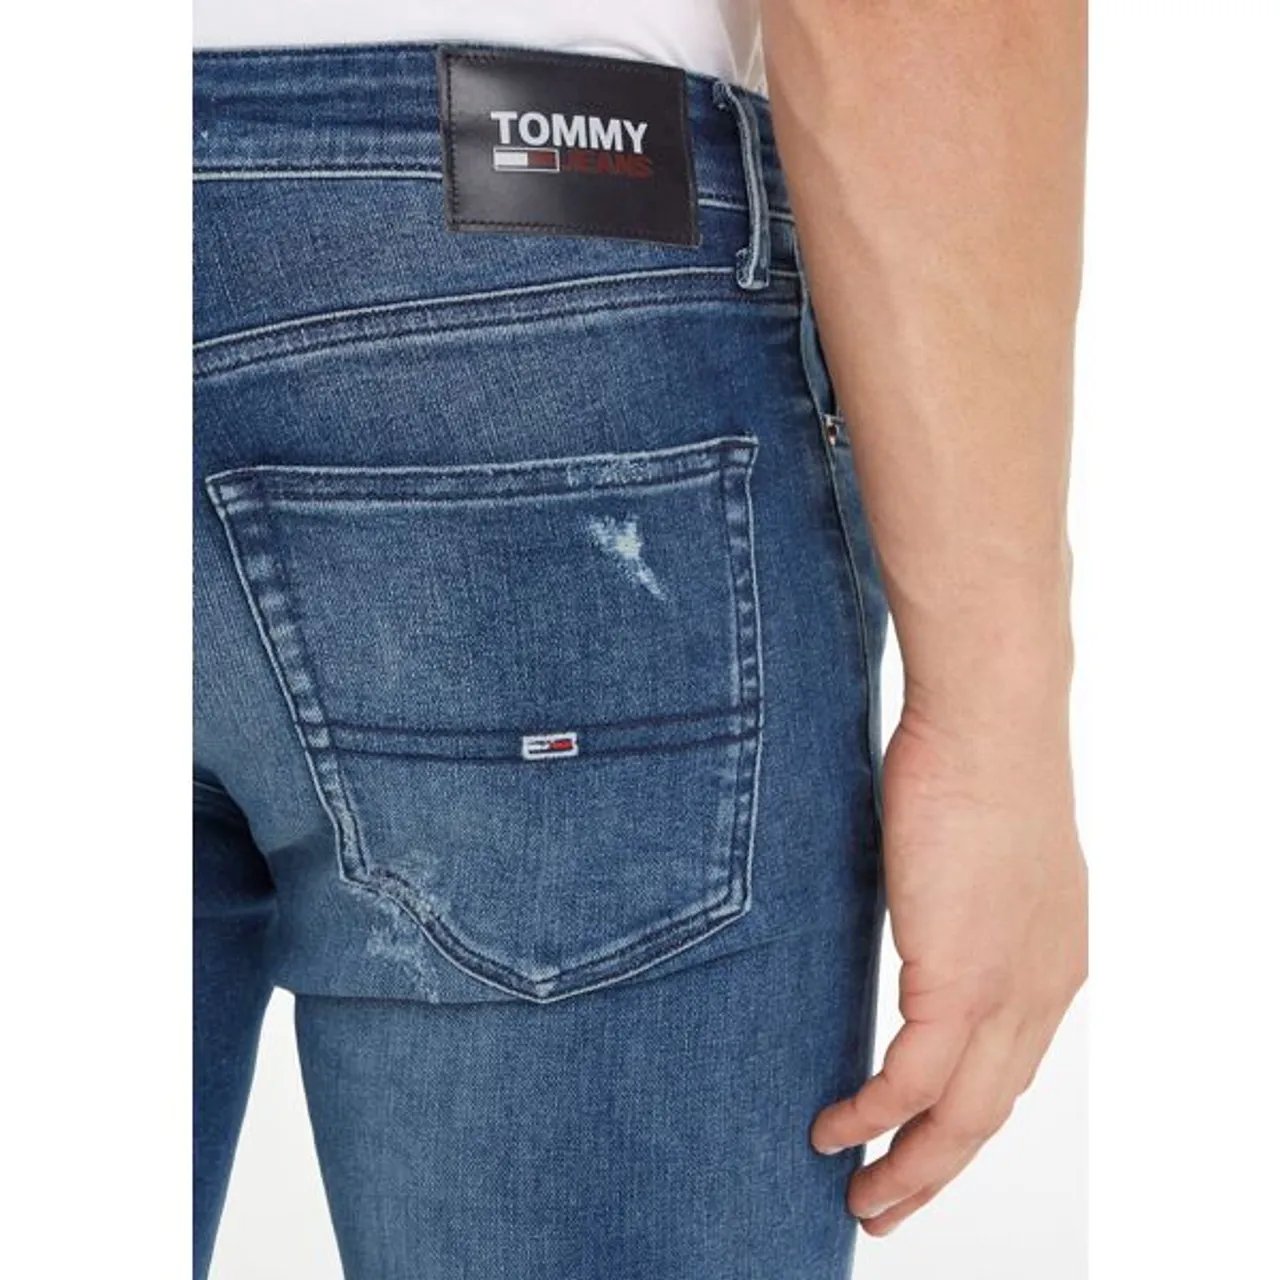 5-Pocket-Jeans TOMMY JEANS "SCANTON SLIM" Gr. 34, Länge 32, blau (denim medium 01) Herren Jeans 5-Pocket-Jeans